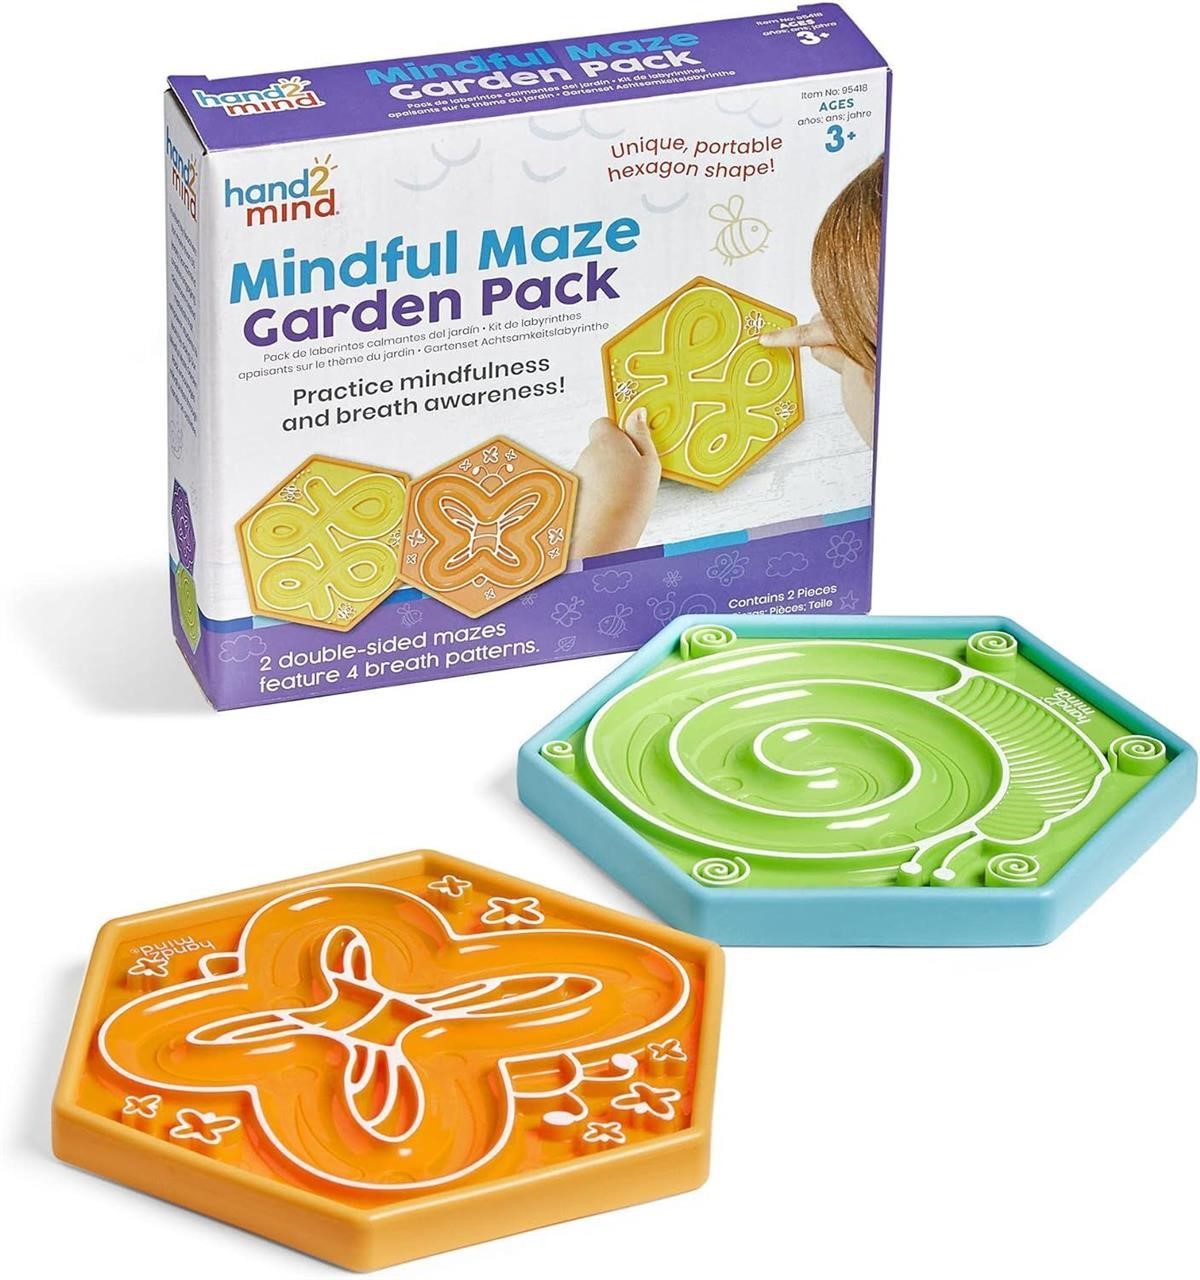 hand2mind Mindful Maze Garden Pack